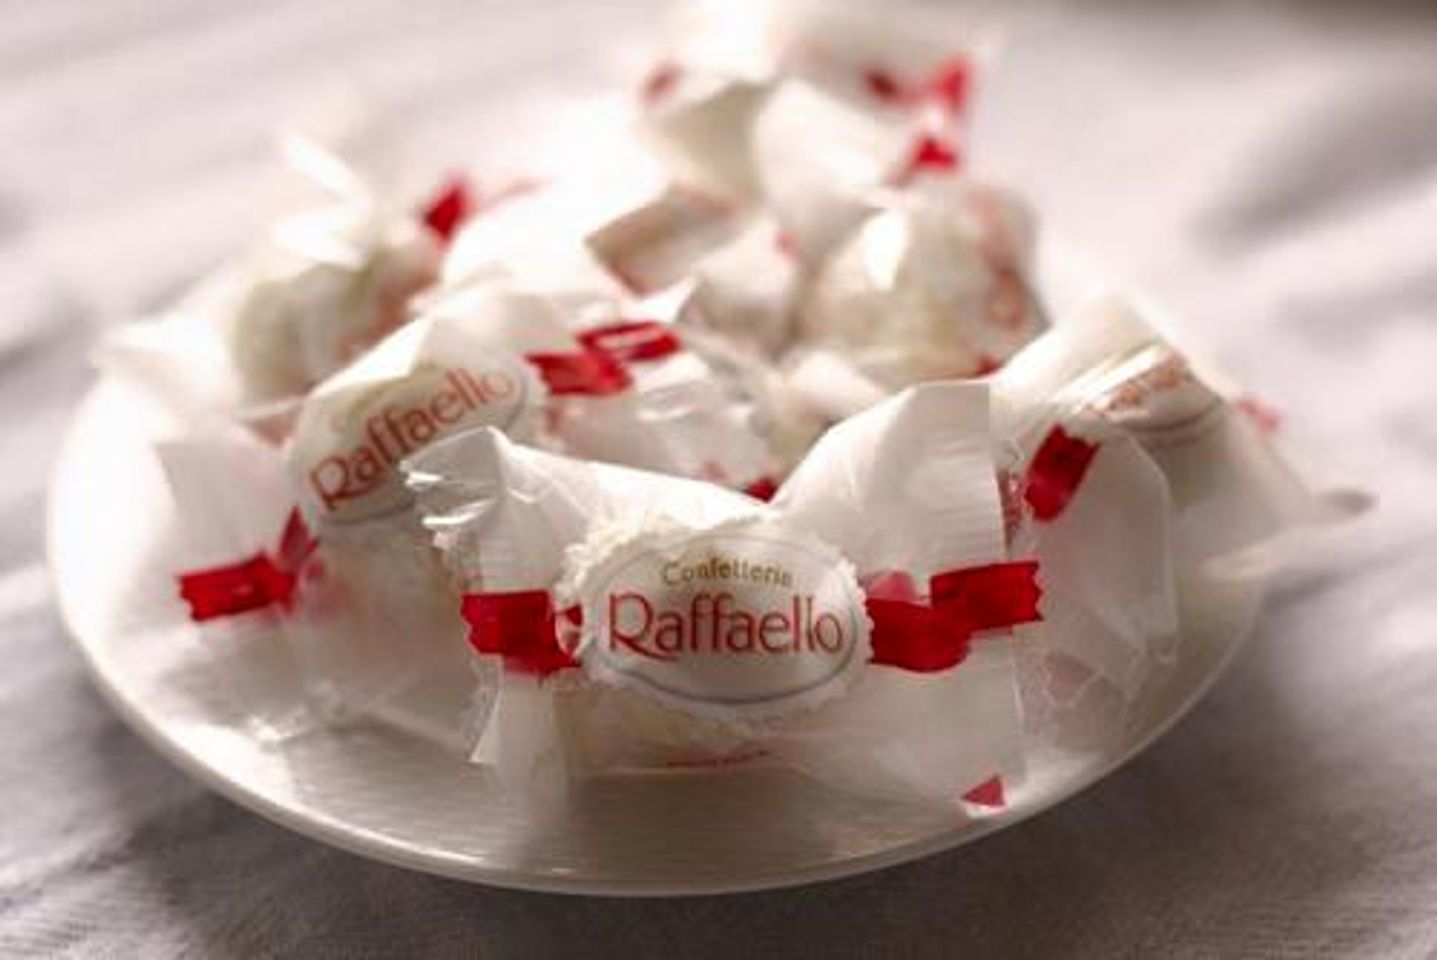 Chắc chắn những người sành ăn và yêu thích cái ngọt sẽ vô cùng thích thú khi được thử một viên Raffaello này